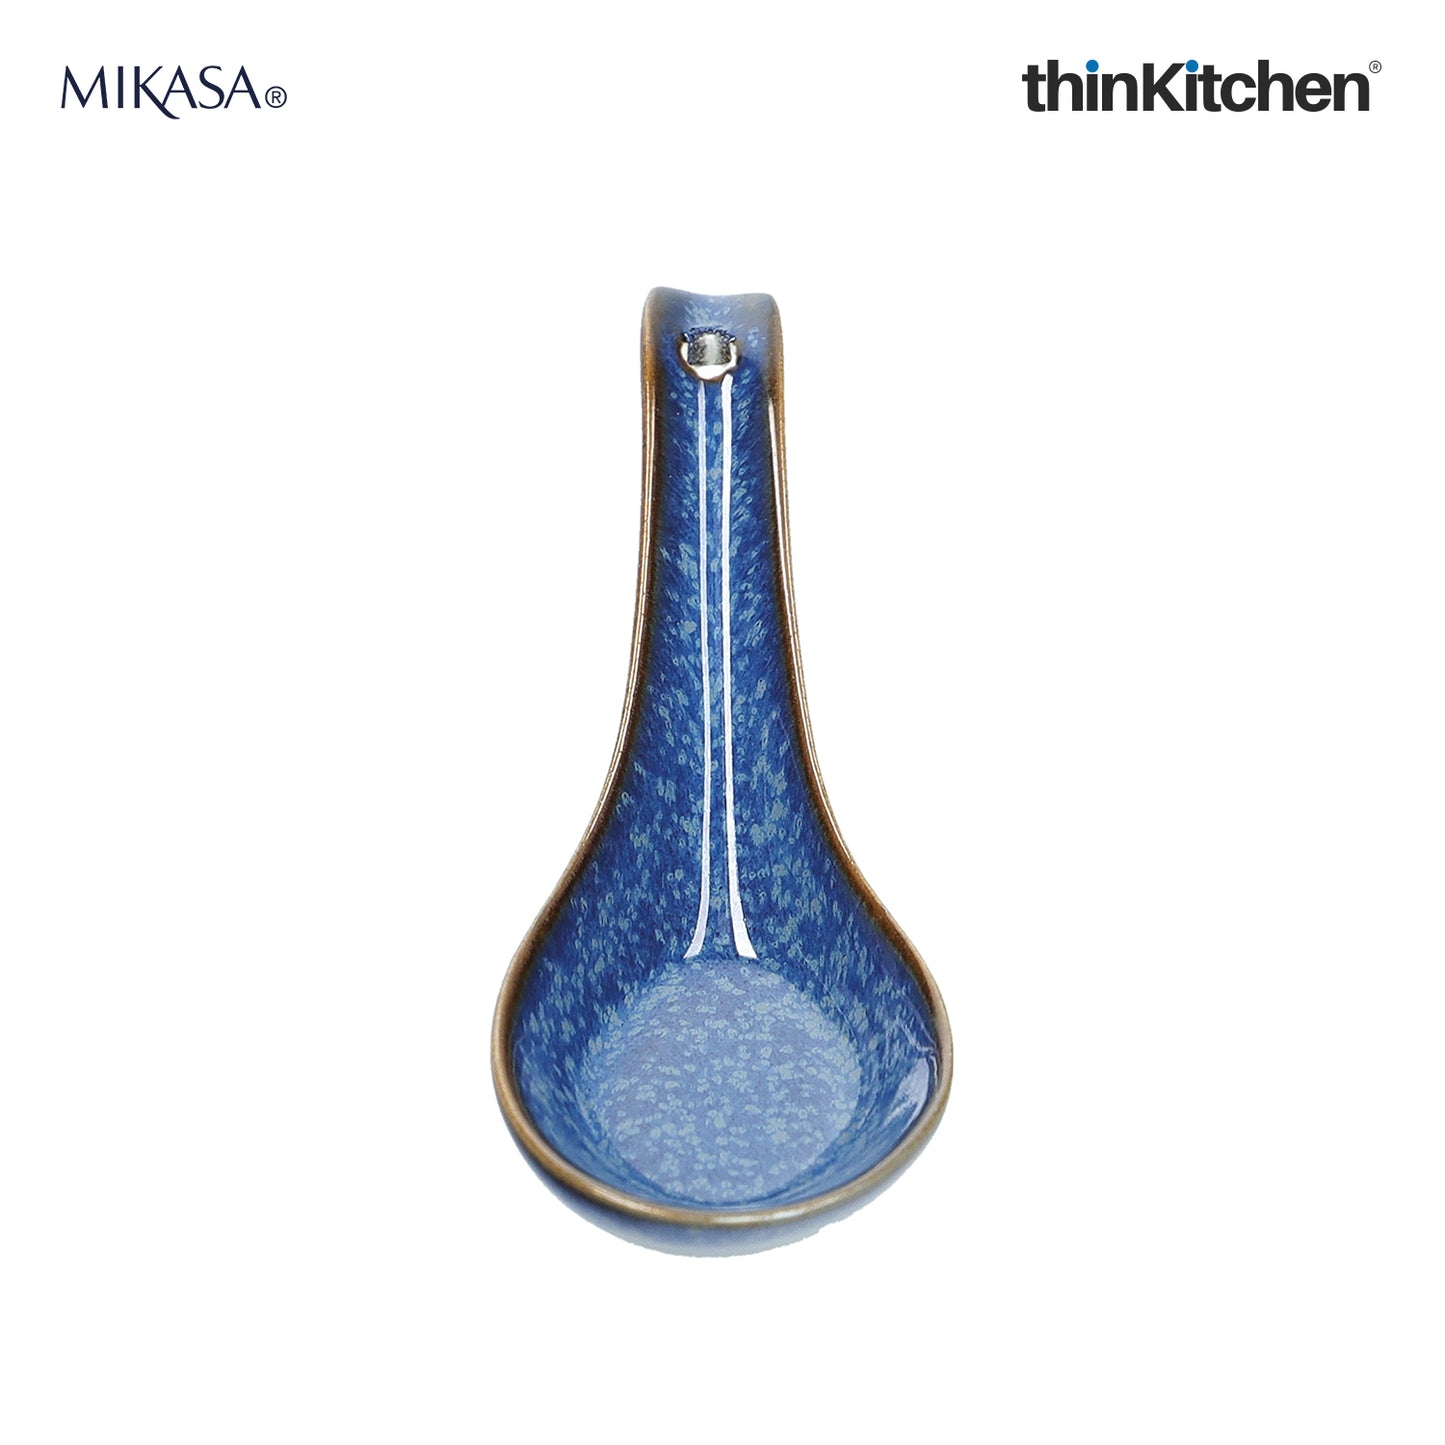 Mikasa Satori Porcelain Rice Spoon